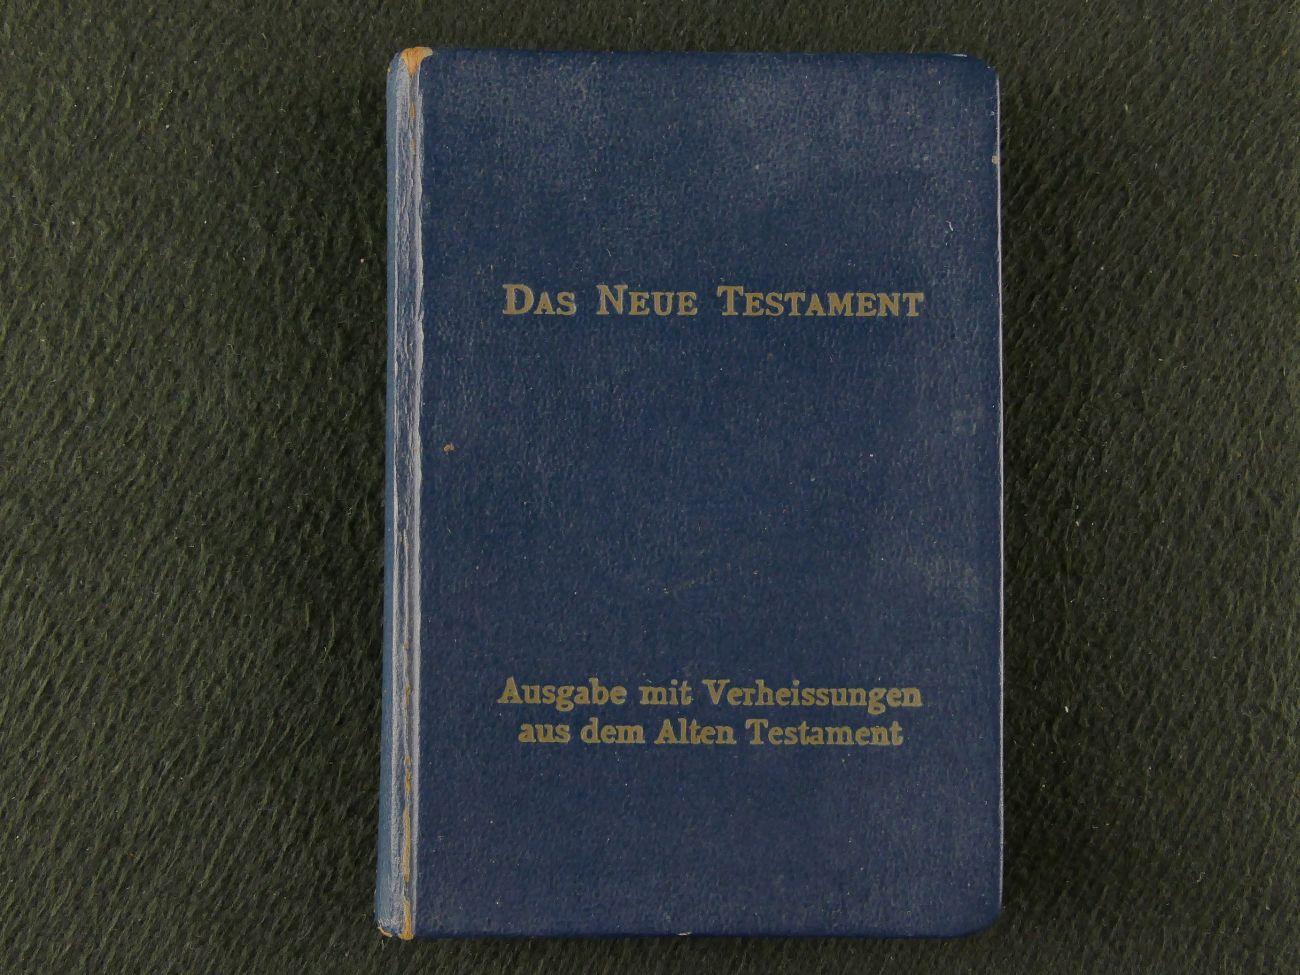 onbekend - Das neue testament. Nach der Deutschen Übersetung Martin Luthers. (2 foto's)